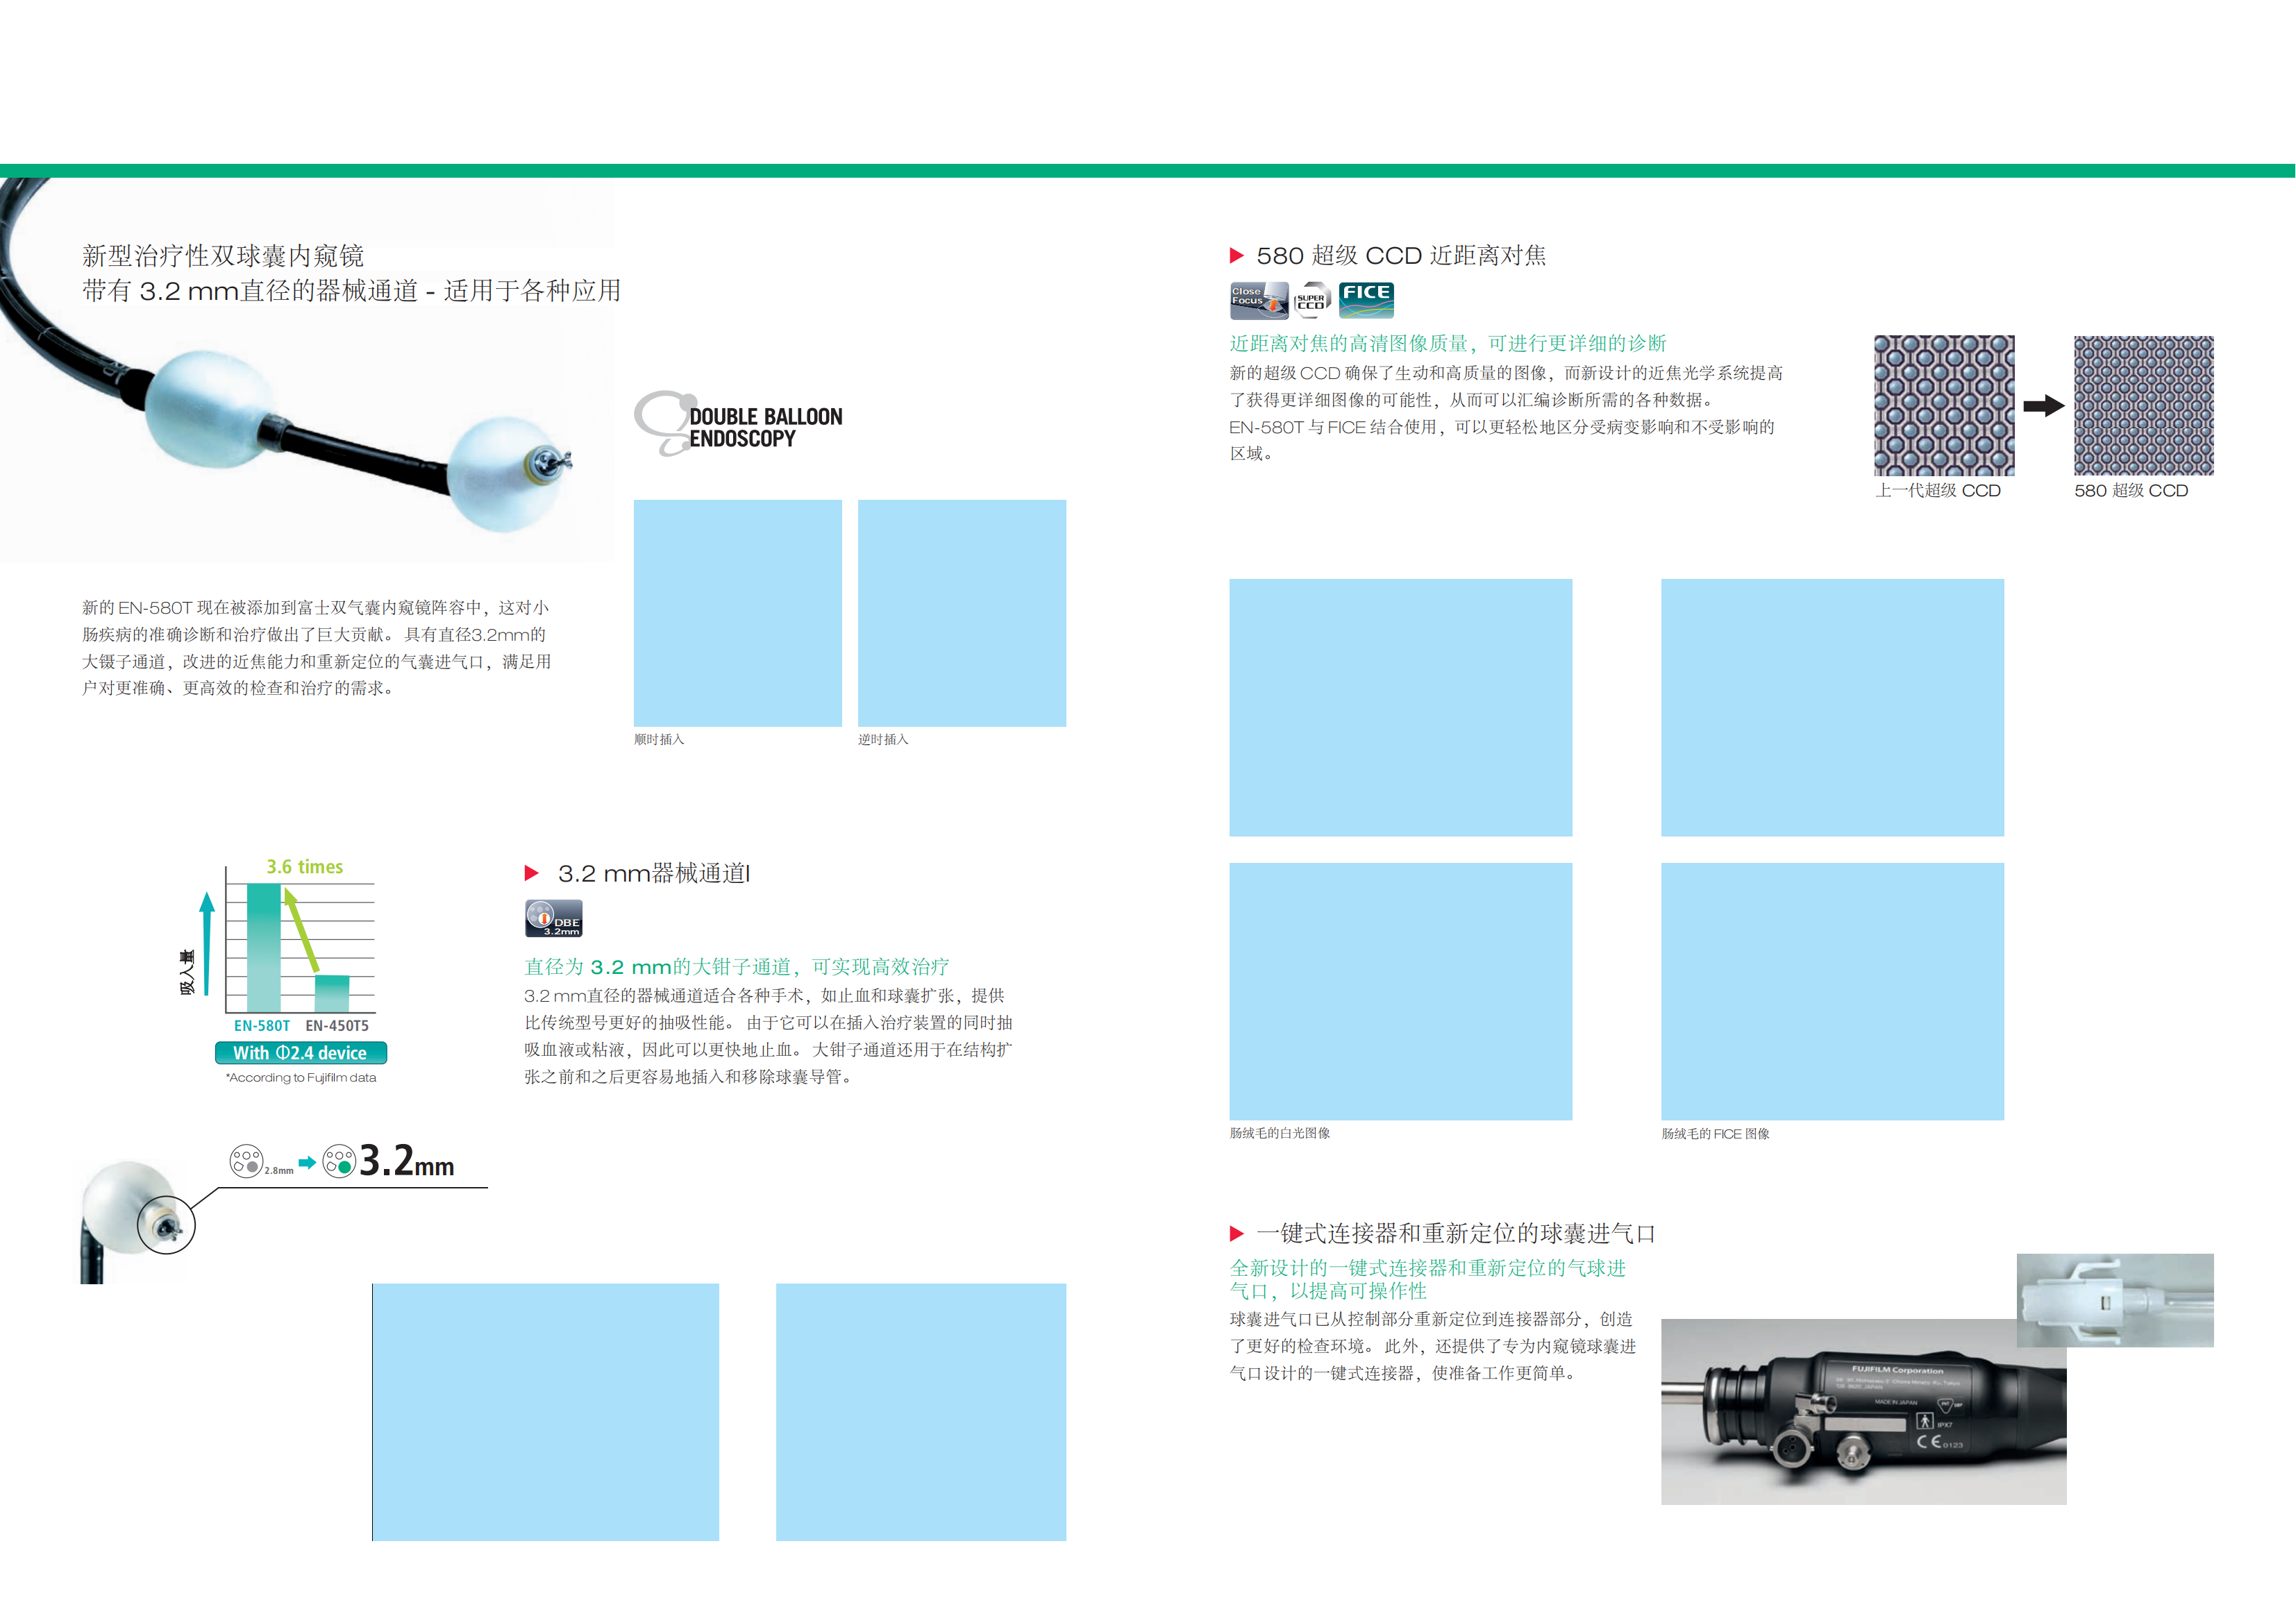 EN_580T_brochure_CN_01.png